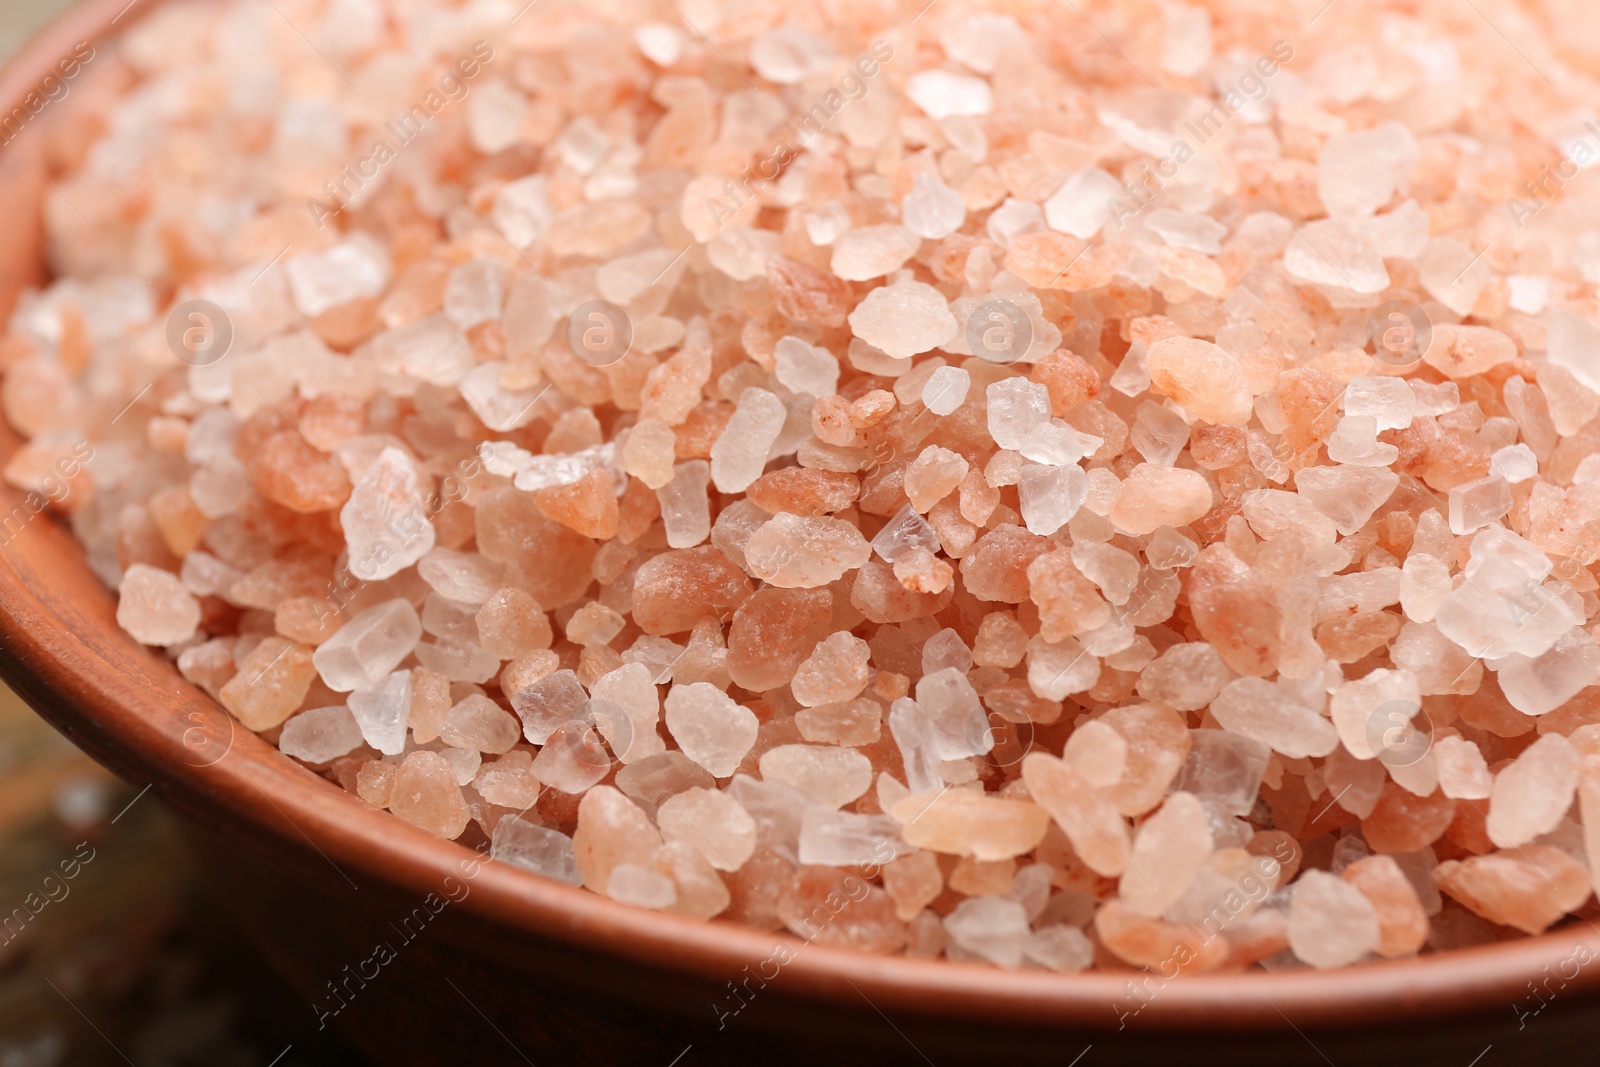 Photo of Pink himalayan salt in bowl, closeup view